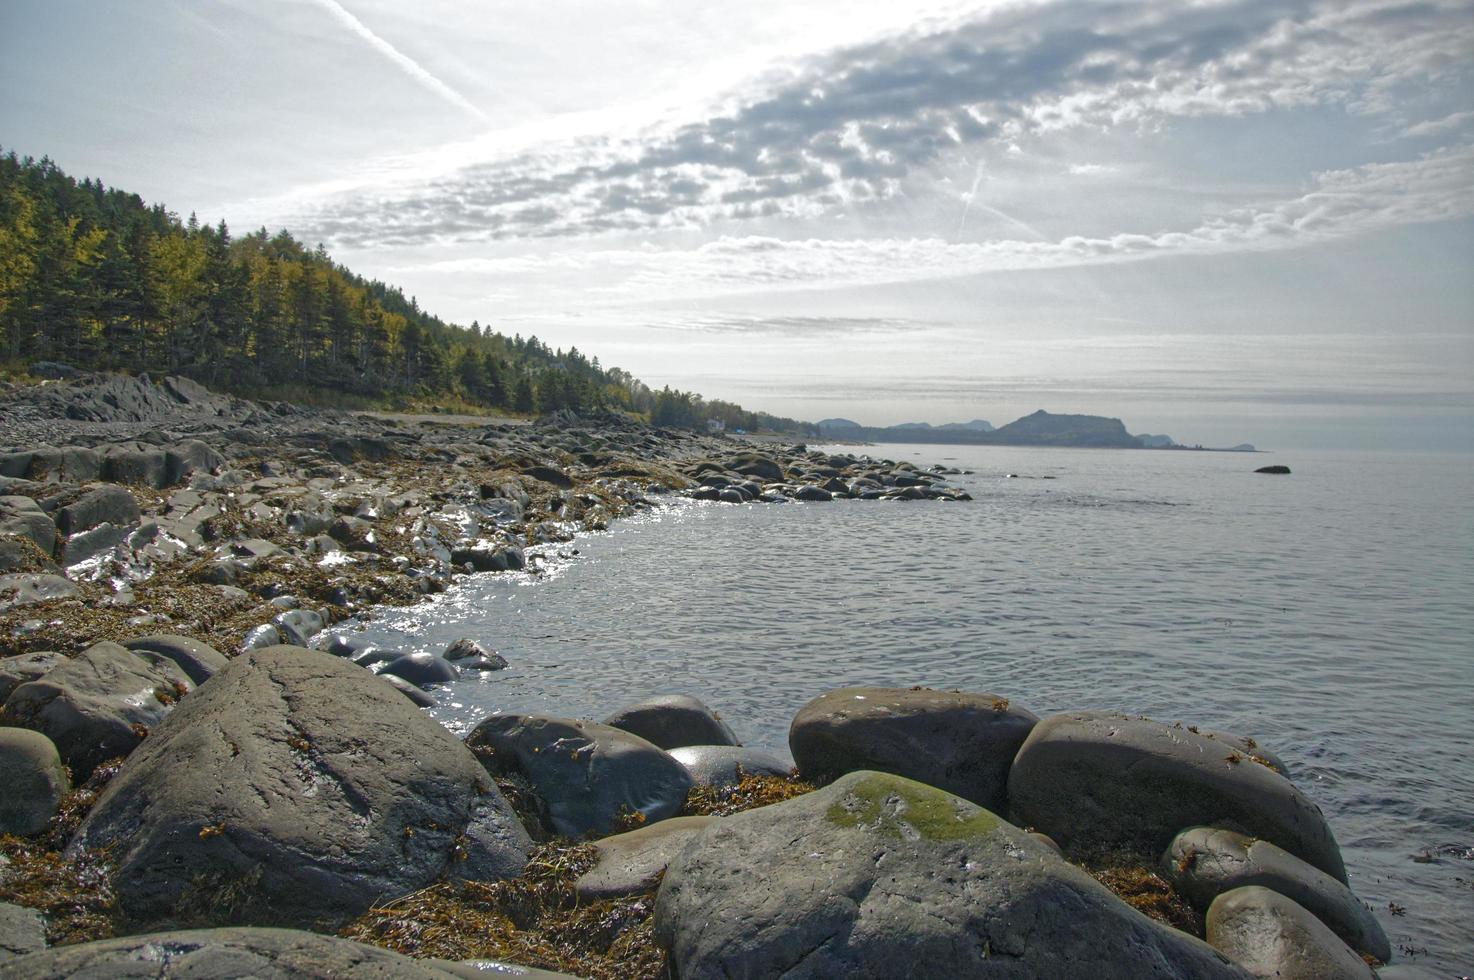 rochas e litoral próximo a corpo d'água com céu azul nublado em quebec, canadá foto